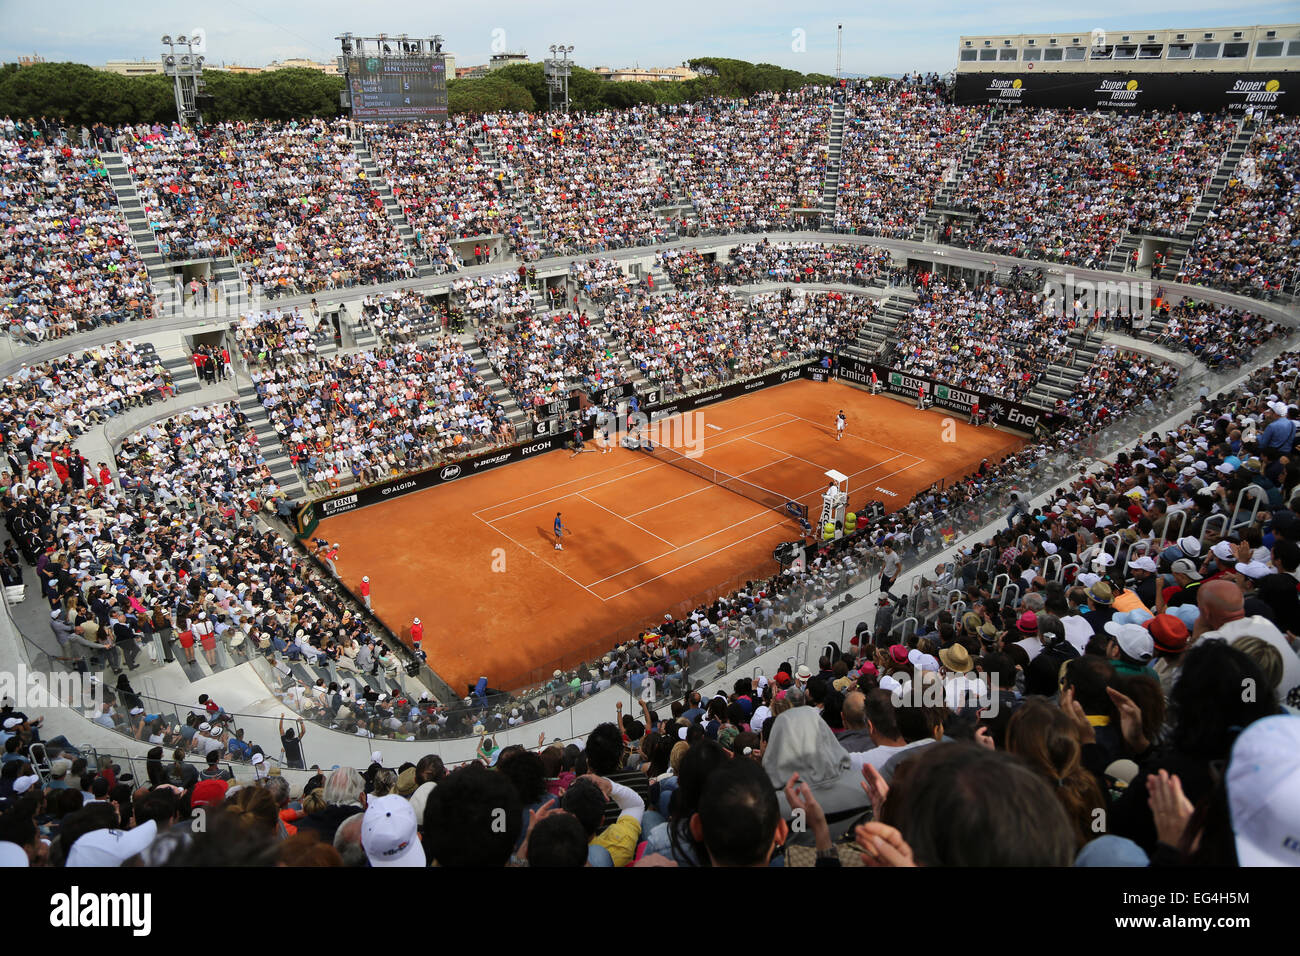 Italie, Rome : une vue générale montre la cour centrale au cours de l'ATP  Tennis Masters de Rome entre l'Espagne finale Rafael Nadal (L Photo Stock -  Alamy